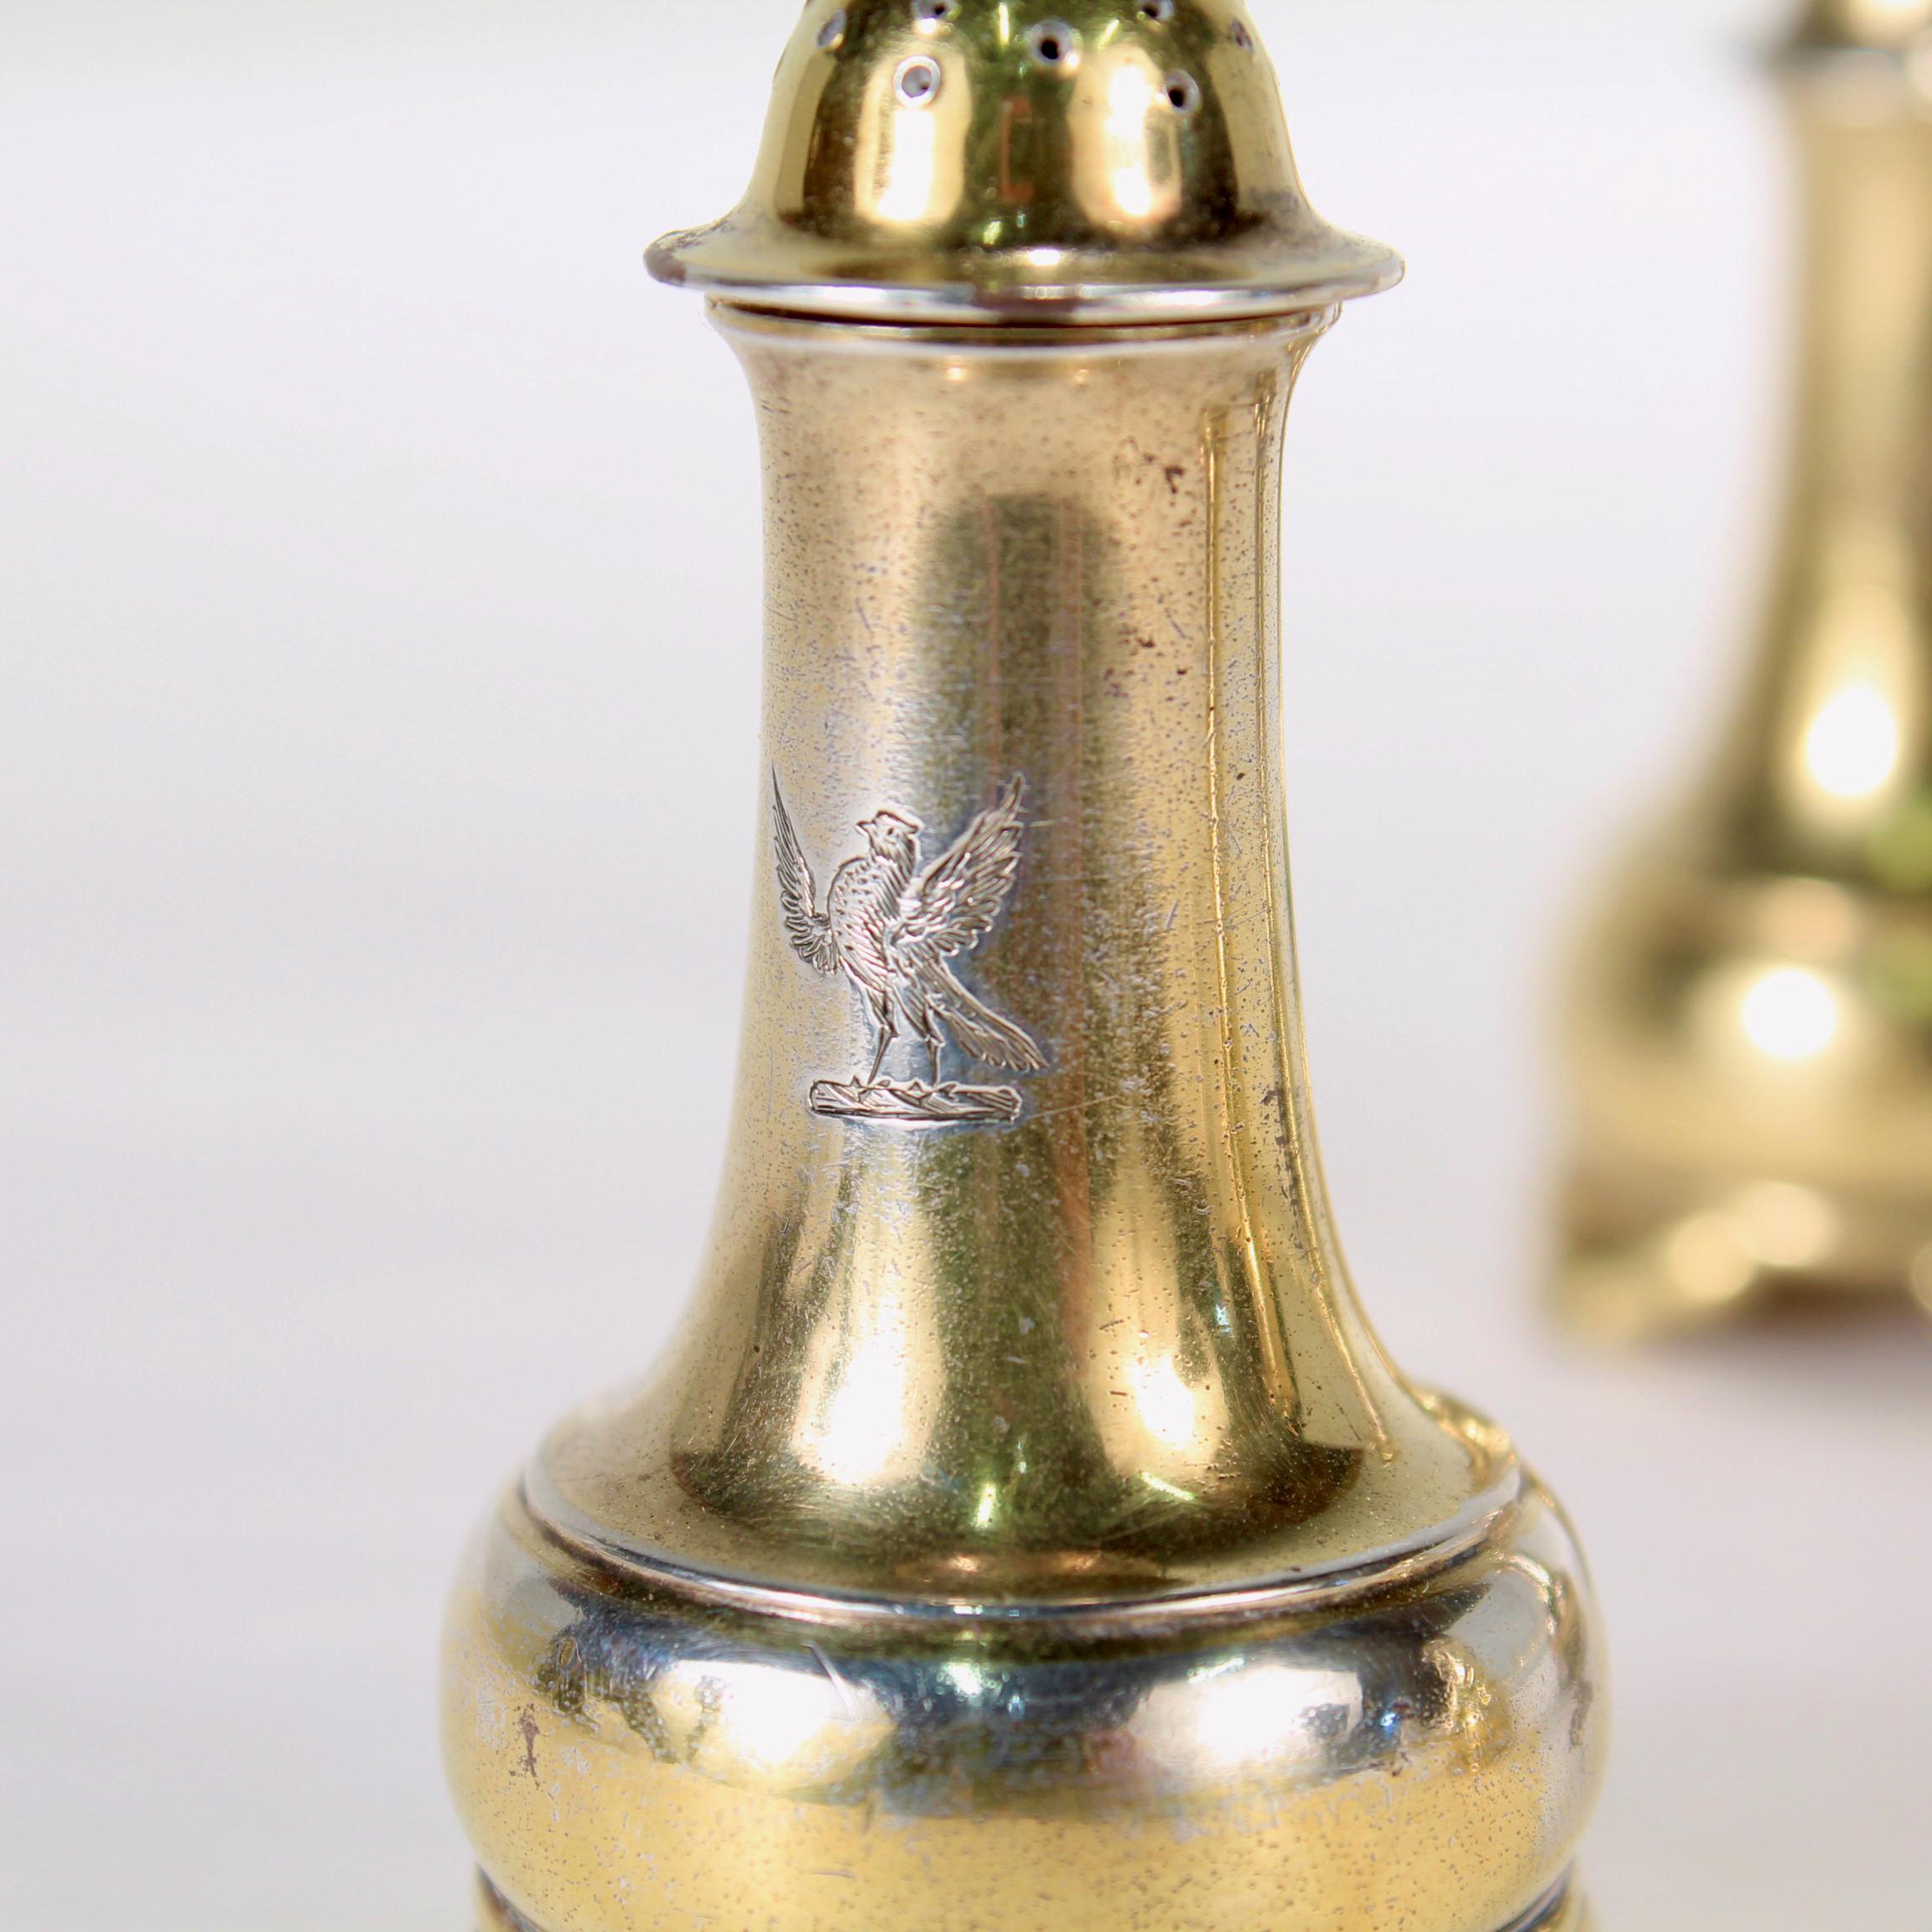 Un très bel ensemble de 4 salières et poivrières anciennes en argent sterling doré.

Par Tiffany & Co. 

Chaque shaker est gravé au centre d'un écusson représentant un grand oiseau (qui semble être un faucon ou un oiseau de proie).

Tout simplement